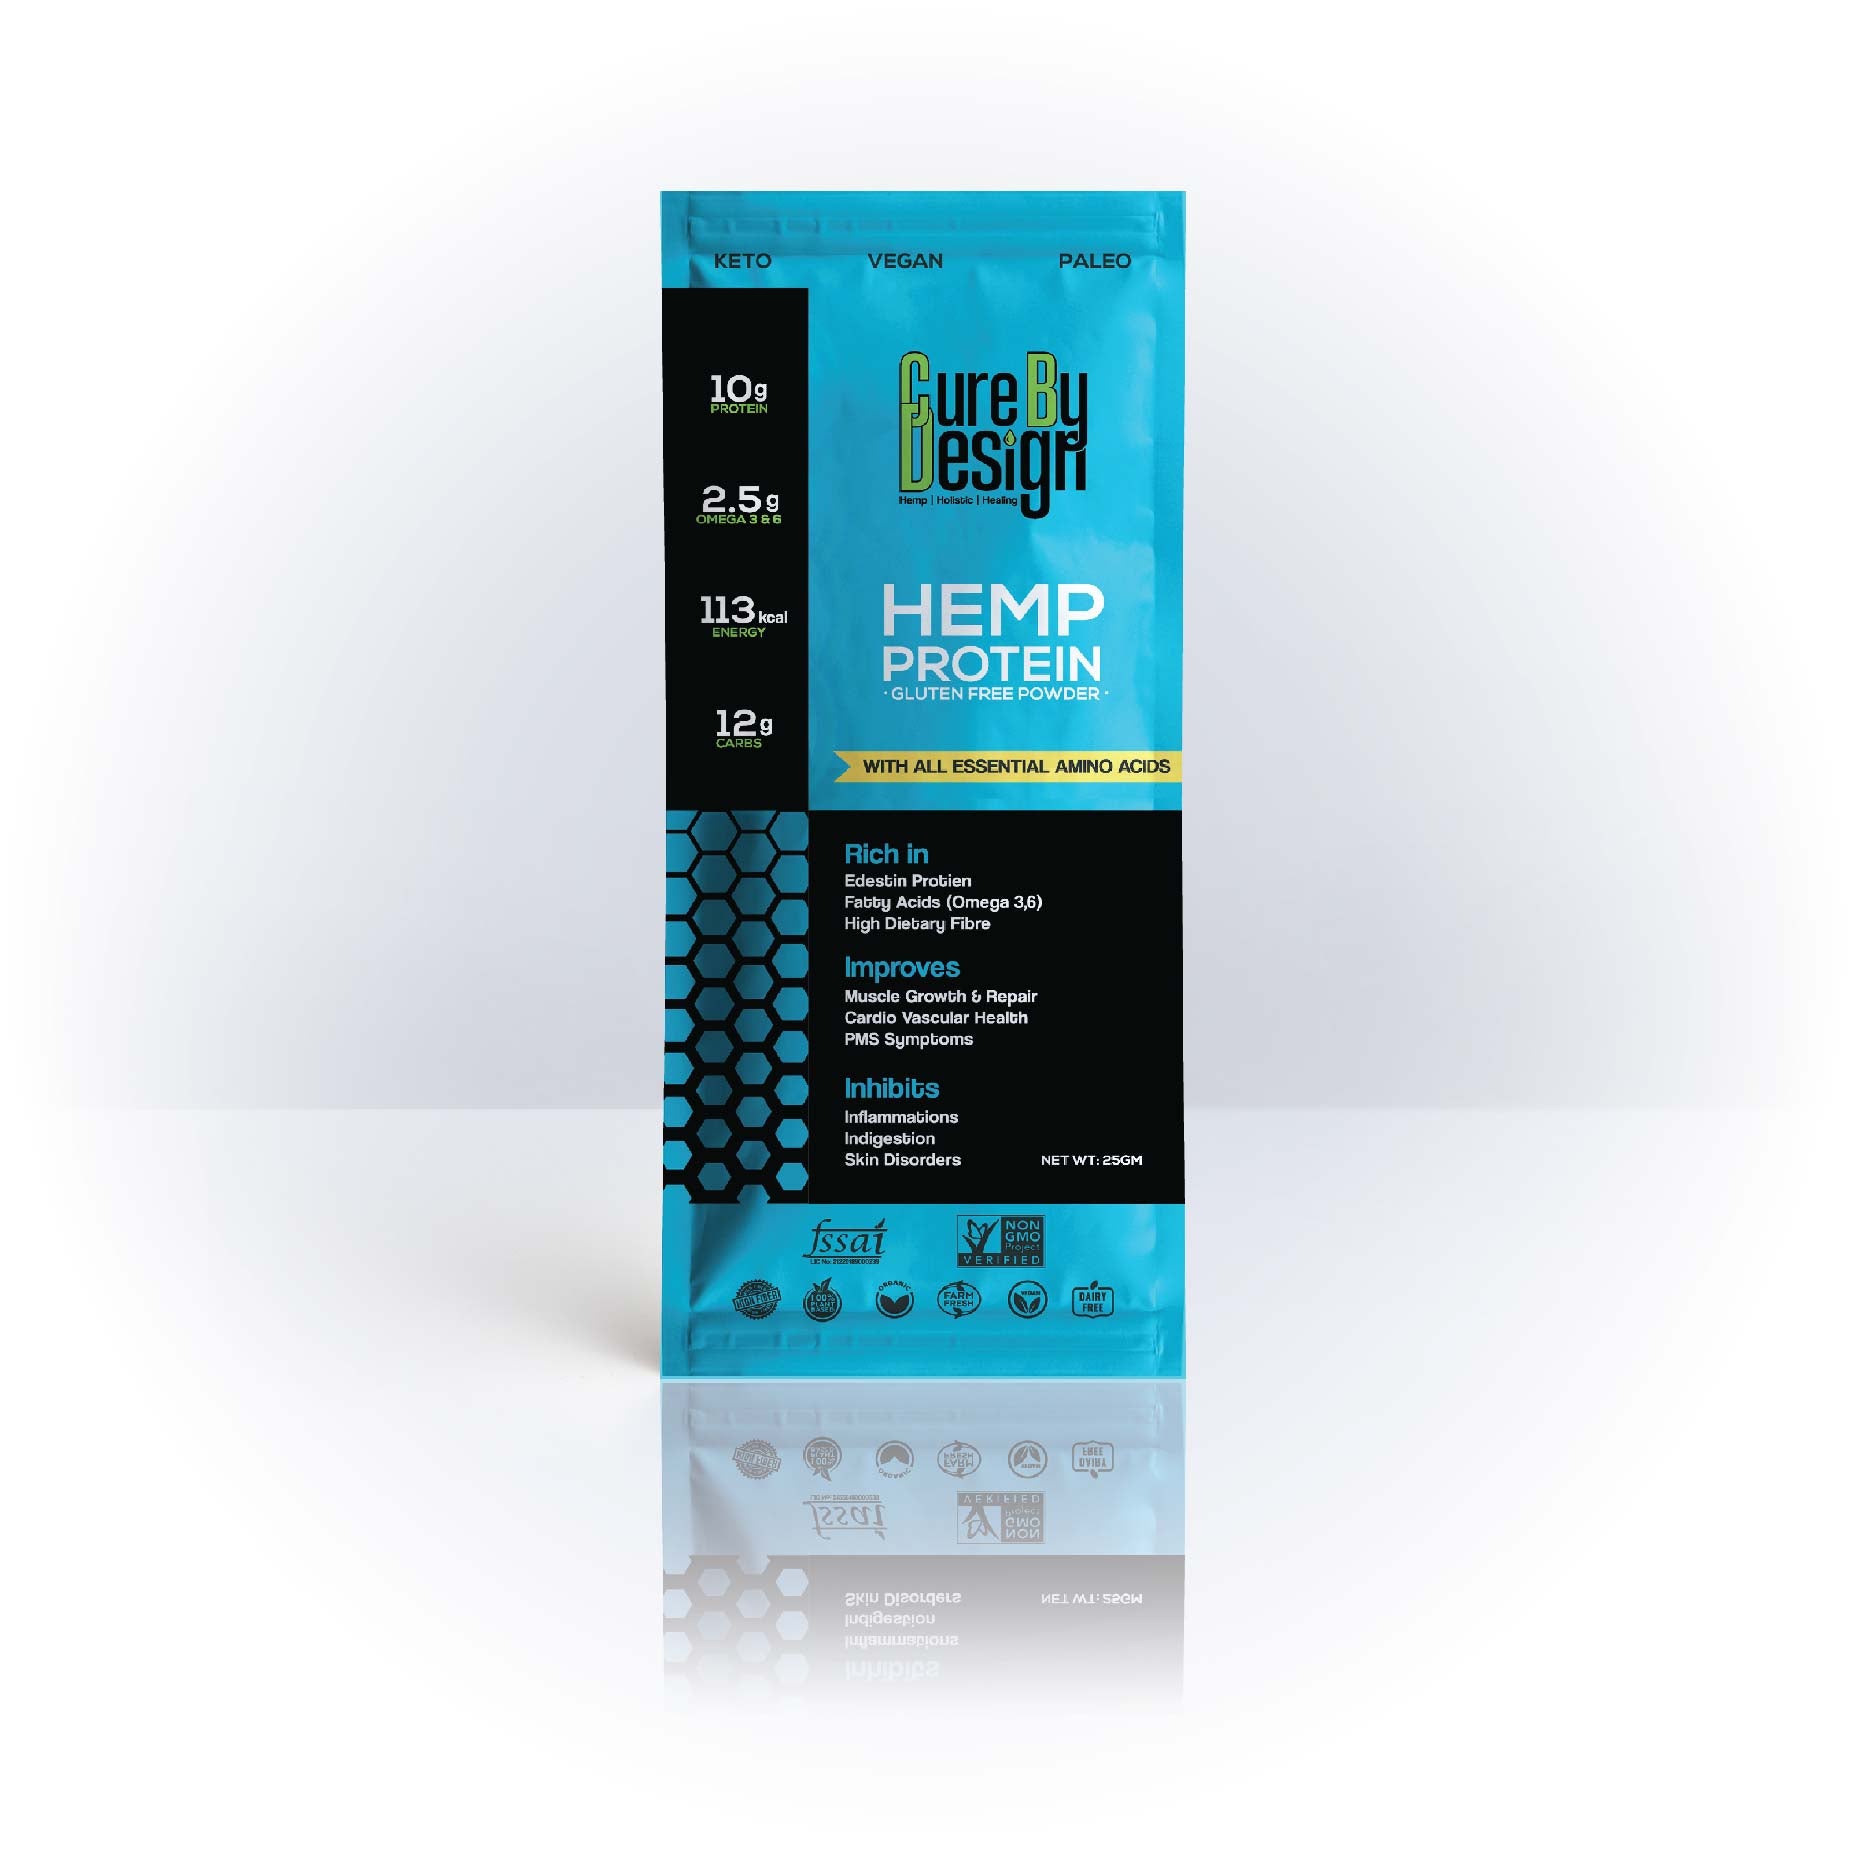 Hemp Protein Powder - 25G